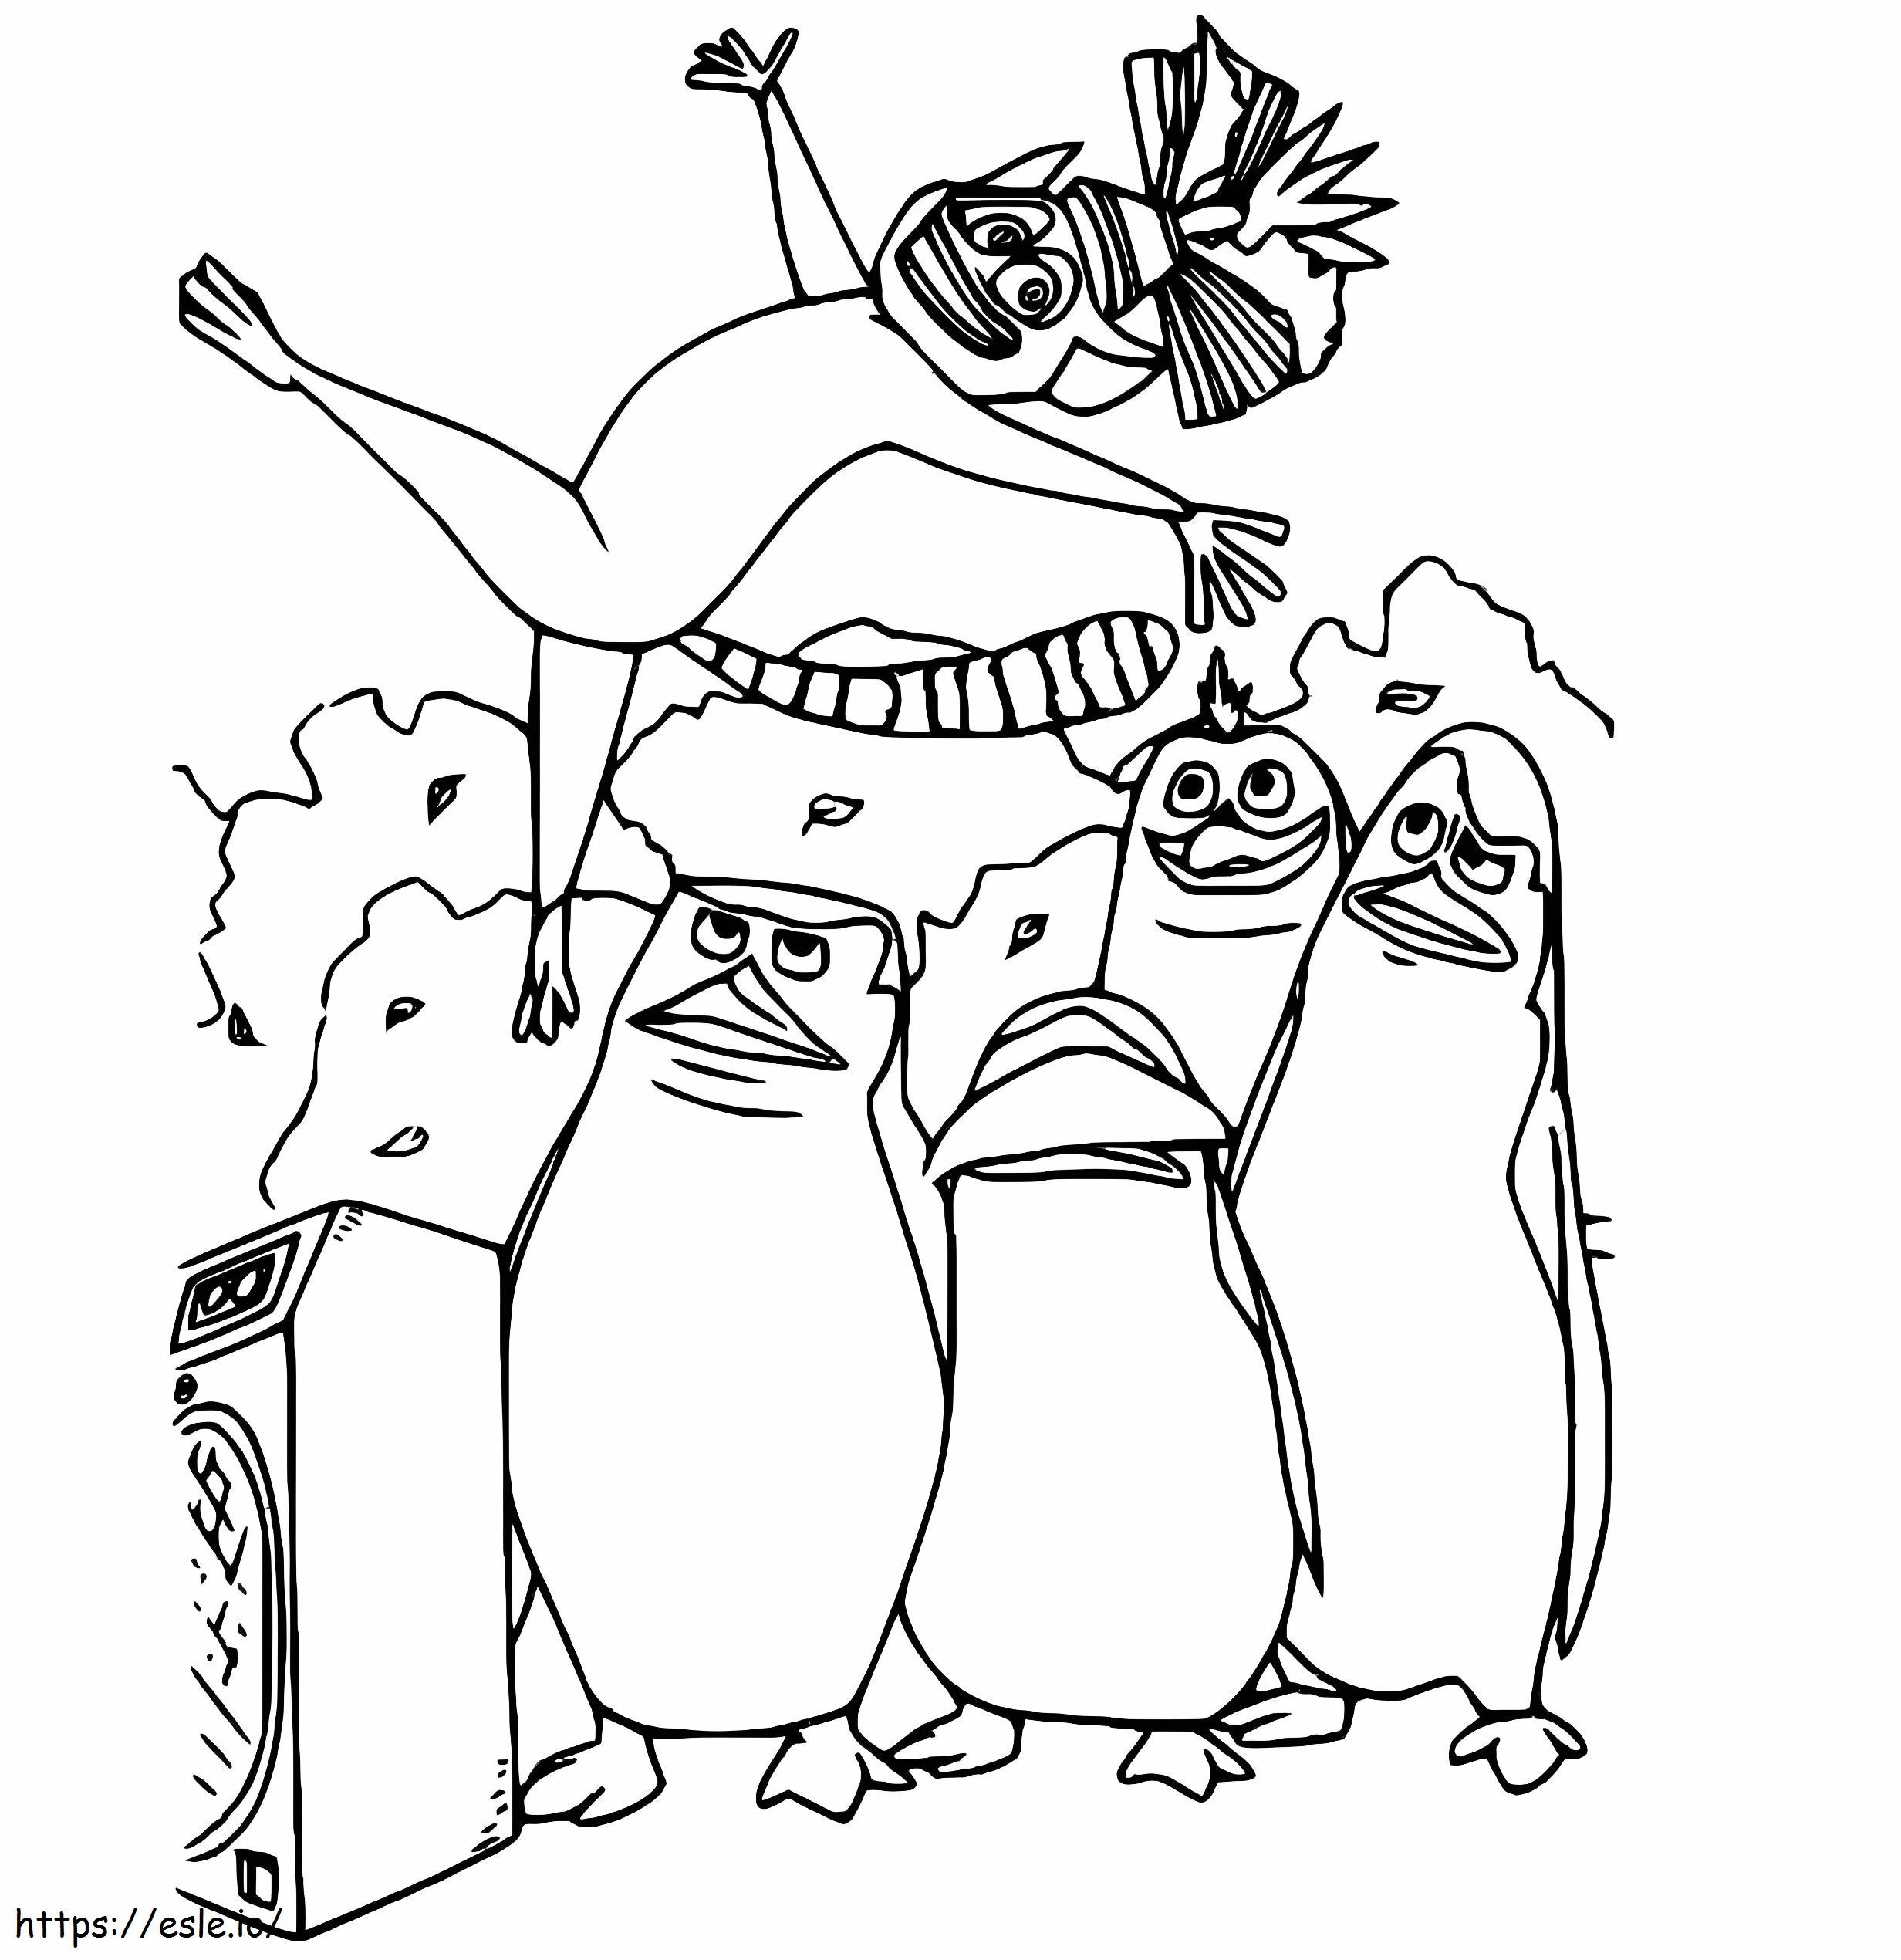 Pinguini di Madagascar stampabili gratuitamente da colorare